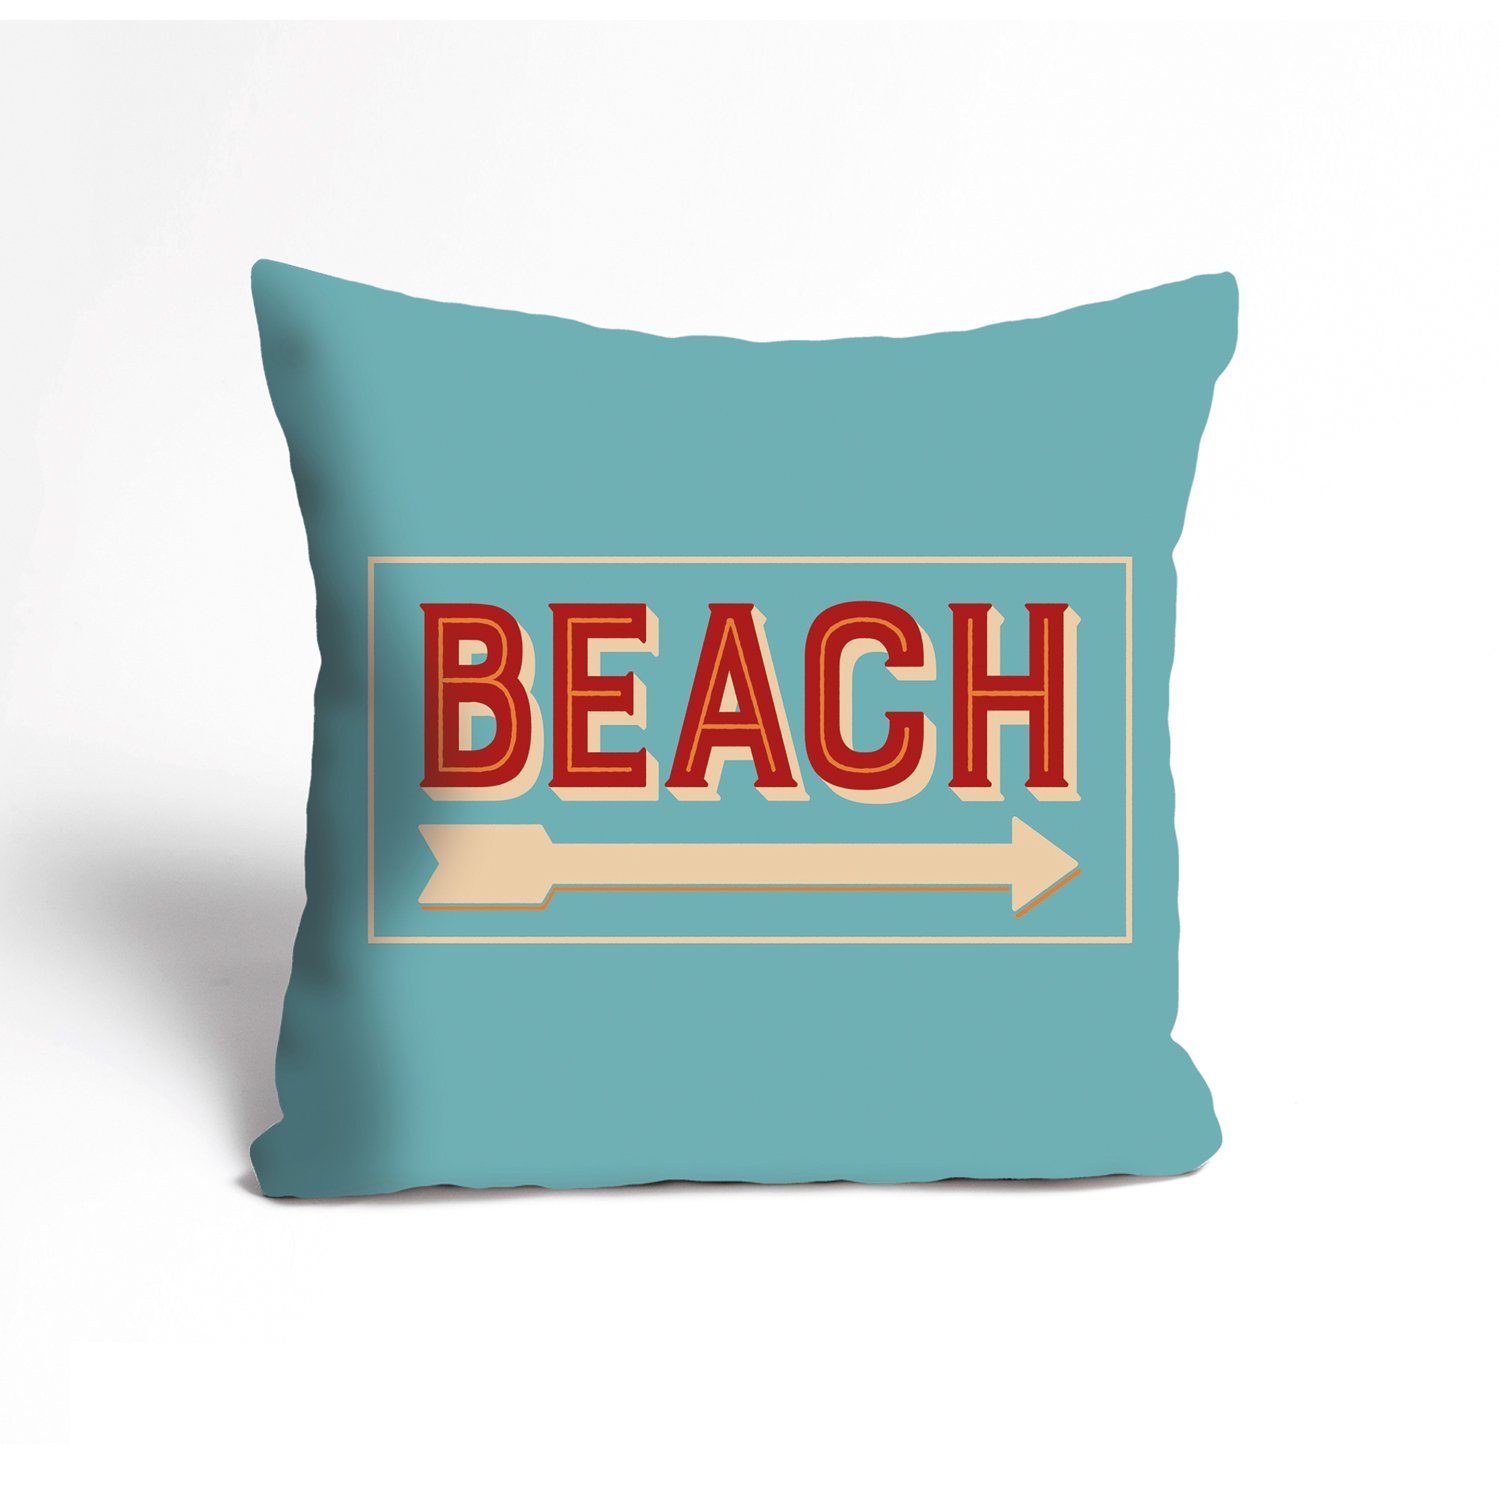 Kissenbezug Beach - Strand - Kissenhülle - Zierkissenbezug, queence (1 Stück), 40x40cm - mit Reißverschluss